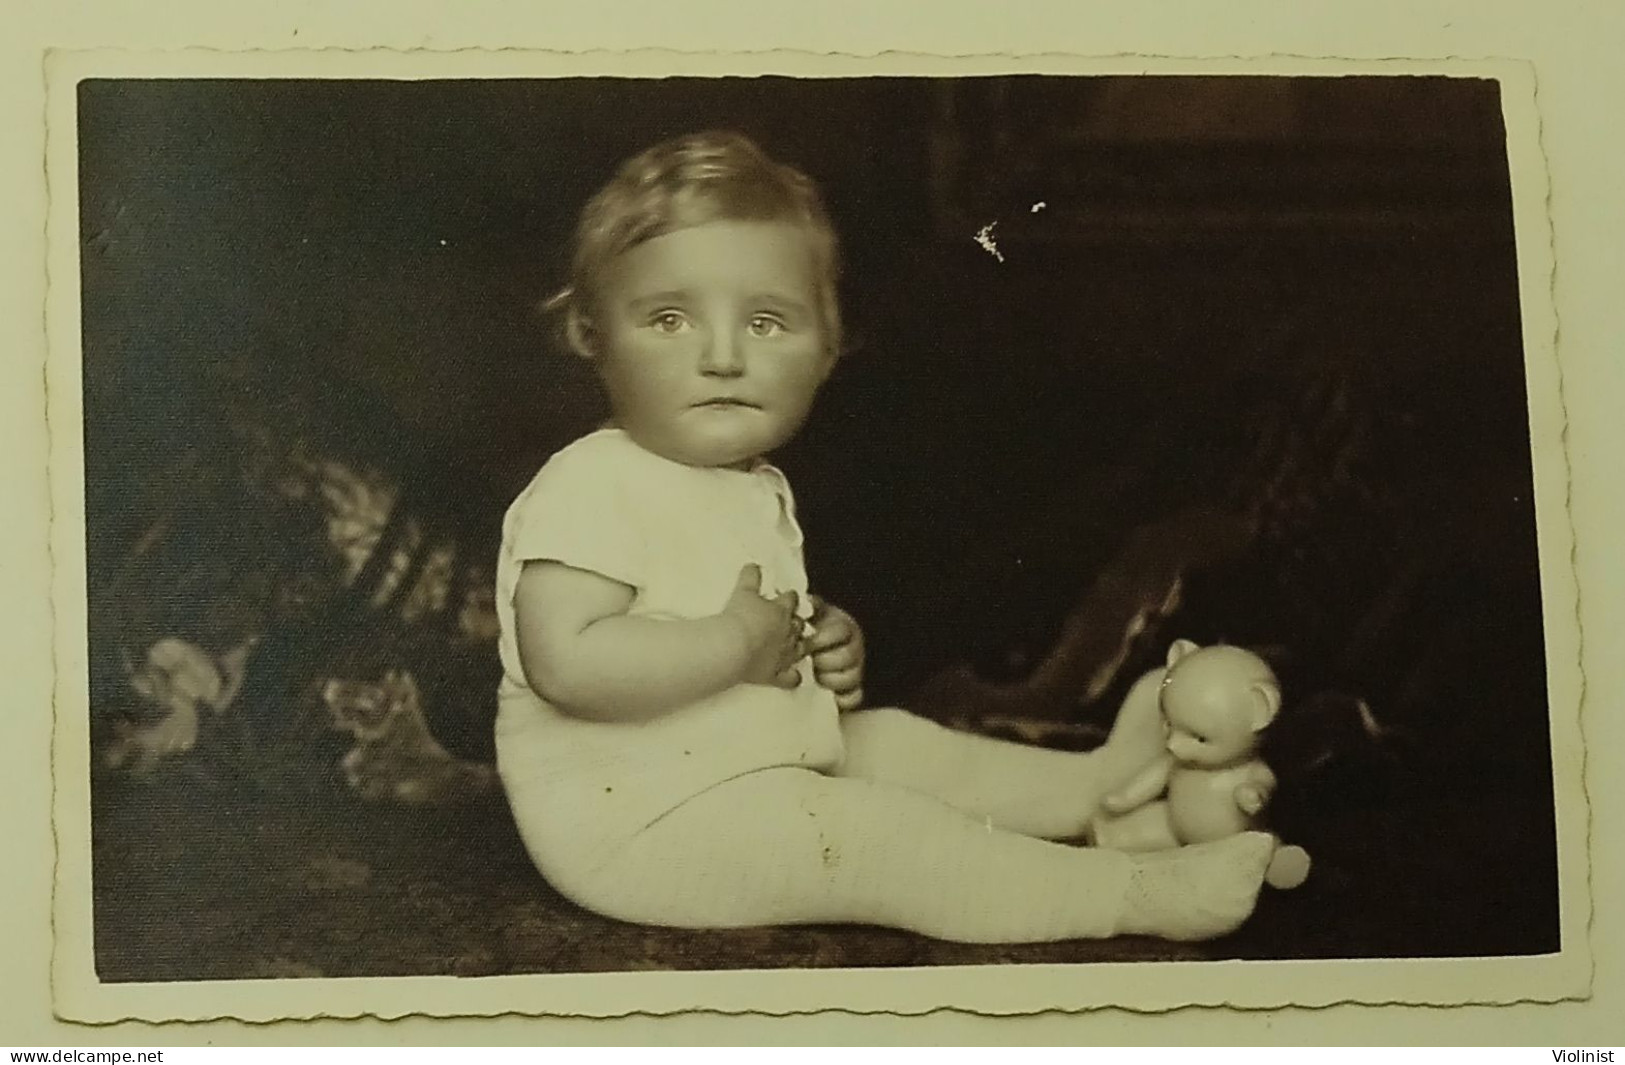 Baby With A Toy-Norddeutsche Heim-Photographie W.Bindseil & Sohn, Hamburg-old Photo - Anonyme Personen